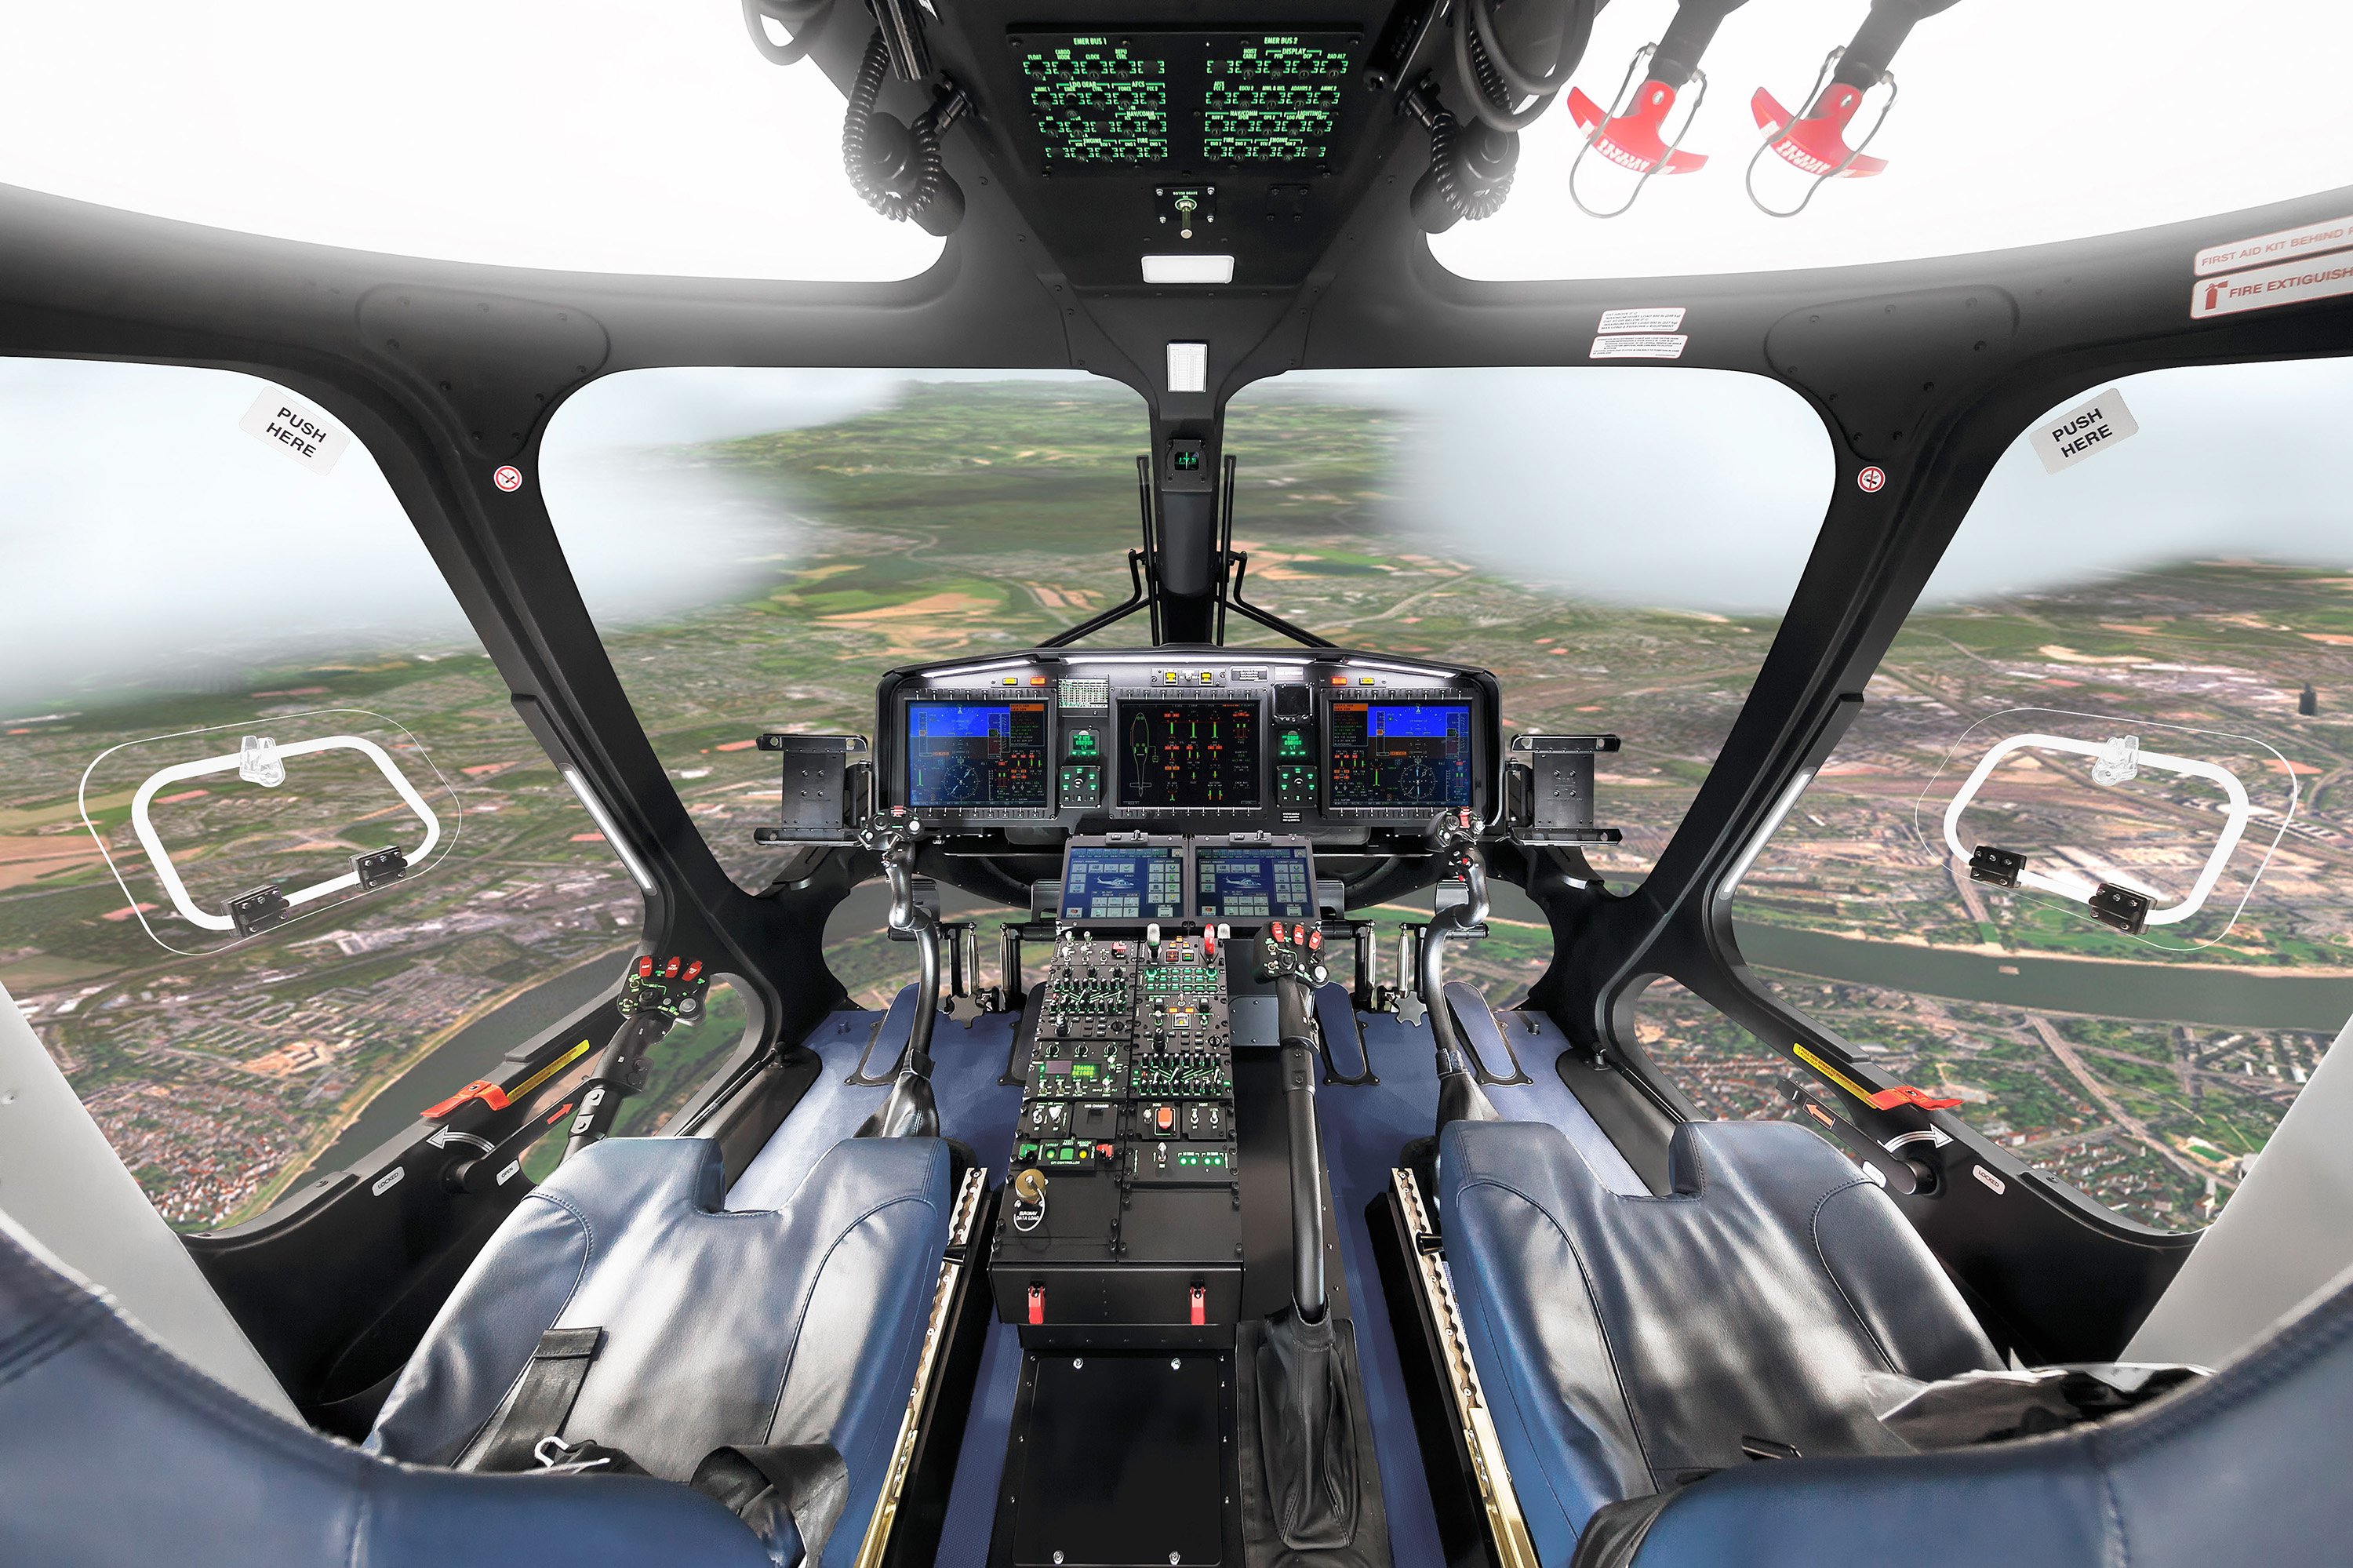 Un nouveau simulateur pour plusieurs types d'hélicoptères